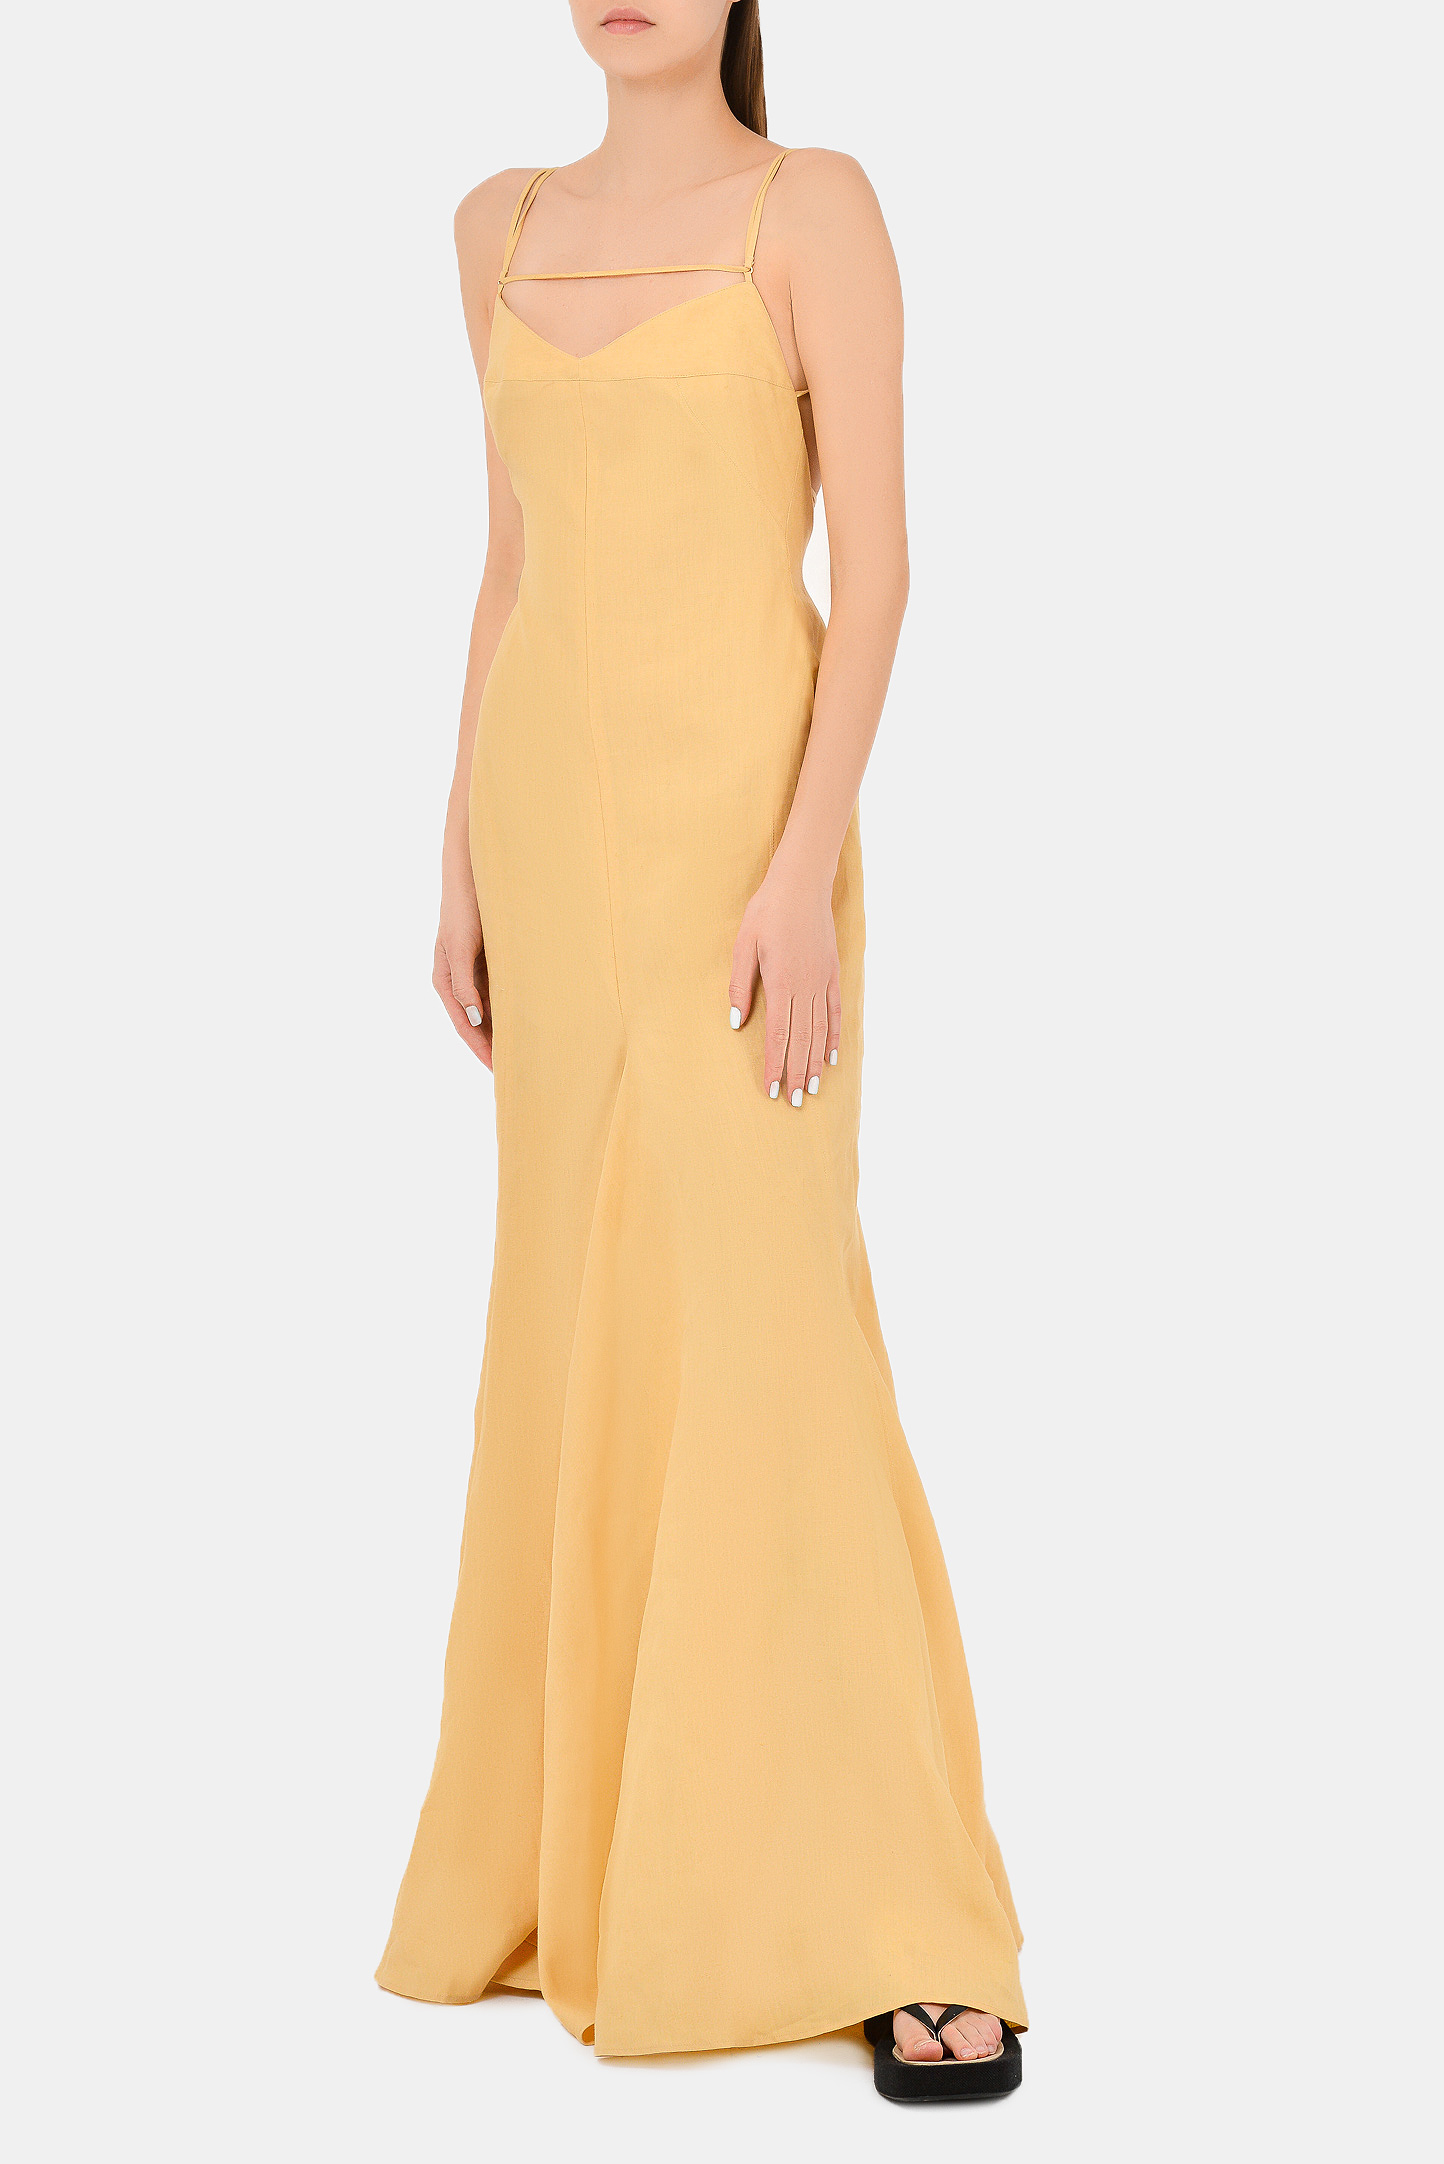 Платье JACQUEMUS 211DR20-211, цвет: Песочный, Женский